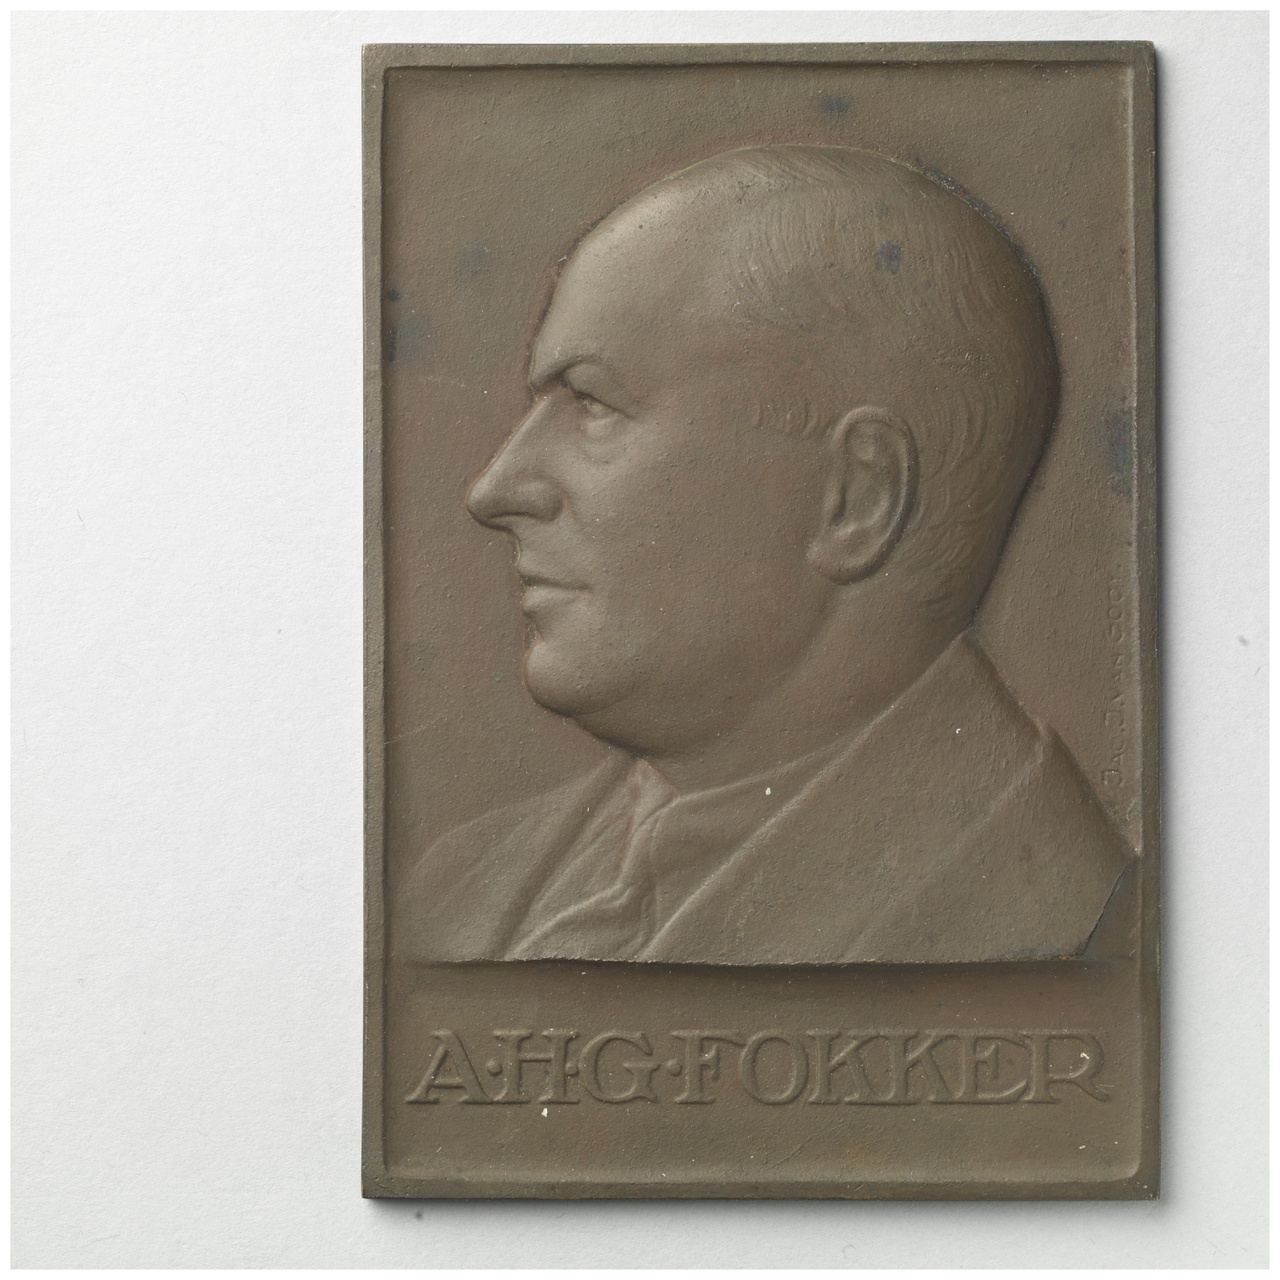 Ereplaquette A.H.G. Fokker